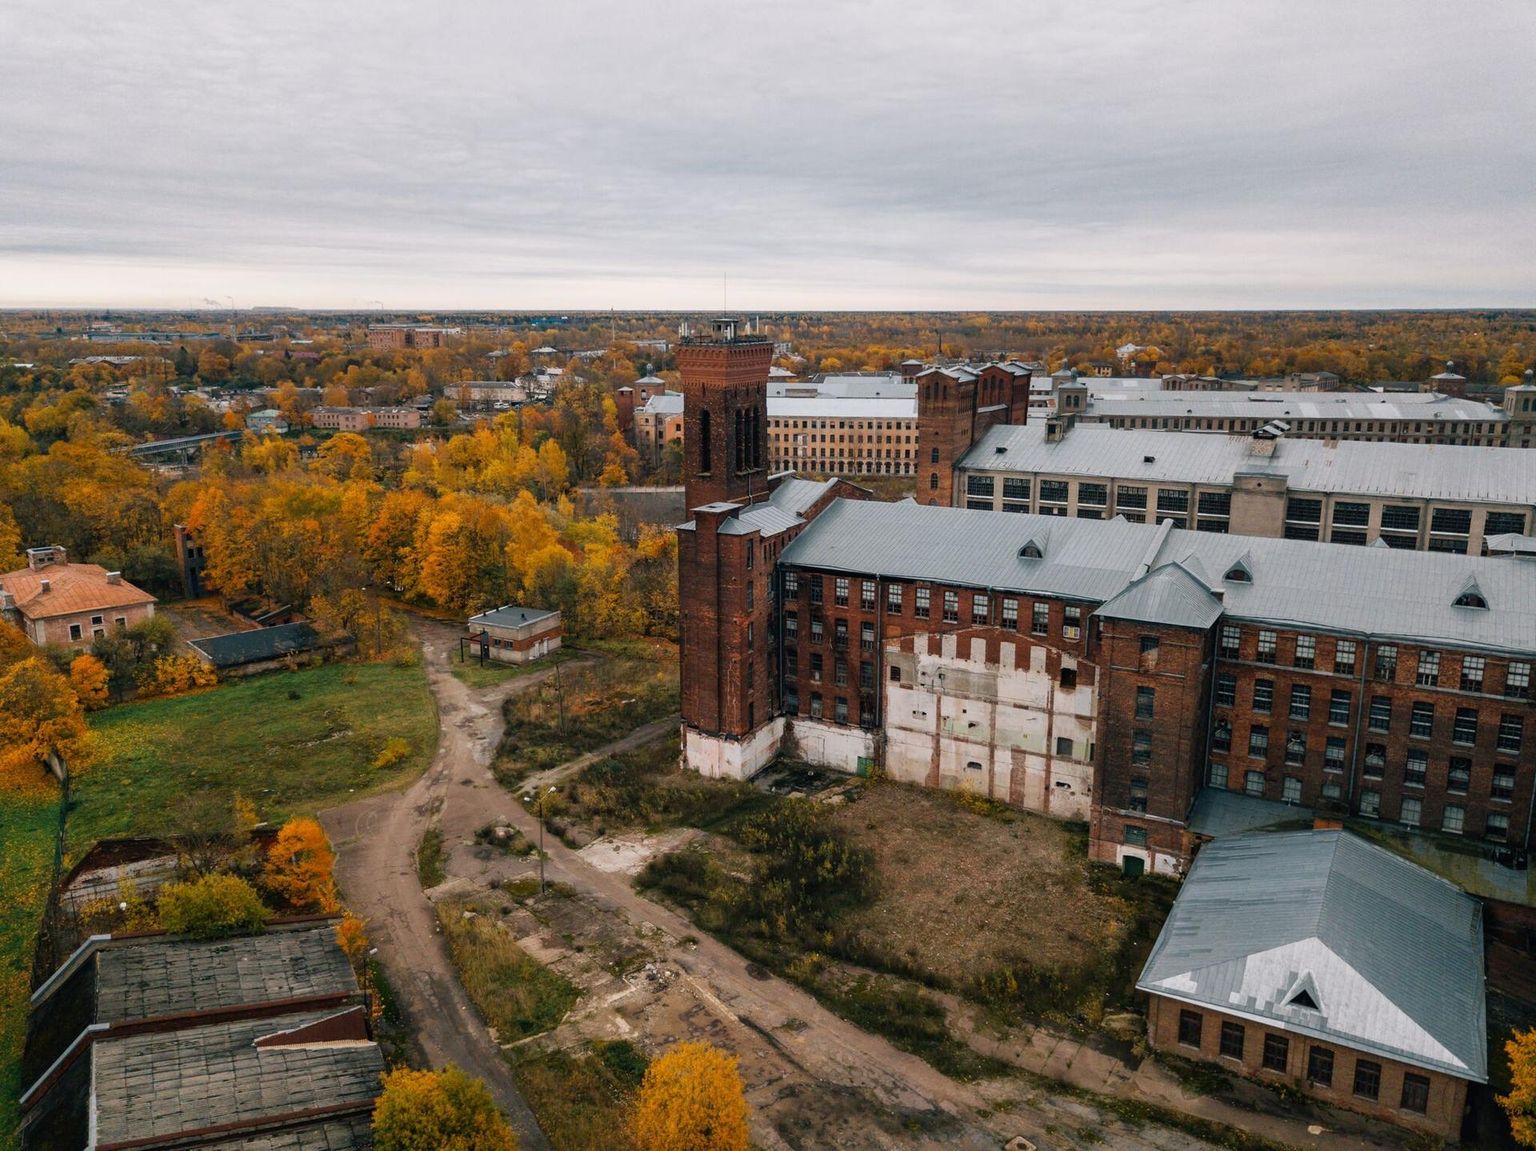 Endises tööstuslinnas Narvas elab praegu üle 57 000 inimese. Narva linnalaboratoorium kutsub kohalikke üles arutlema, kuidas elukeskkonda enda ümber paremaks muuta. FOTO: Tõnu Tunnel